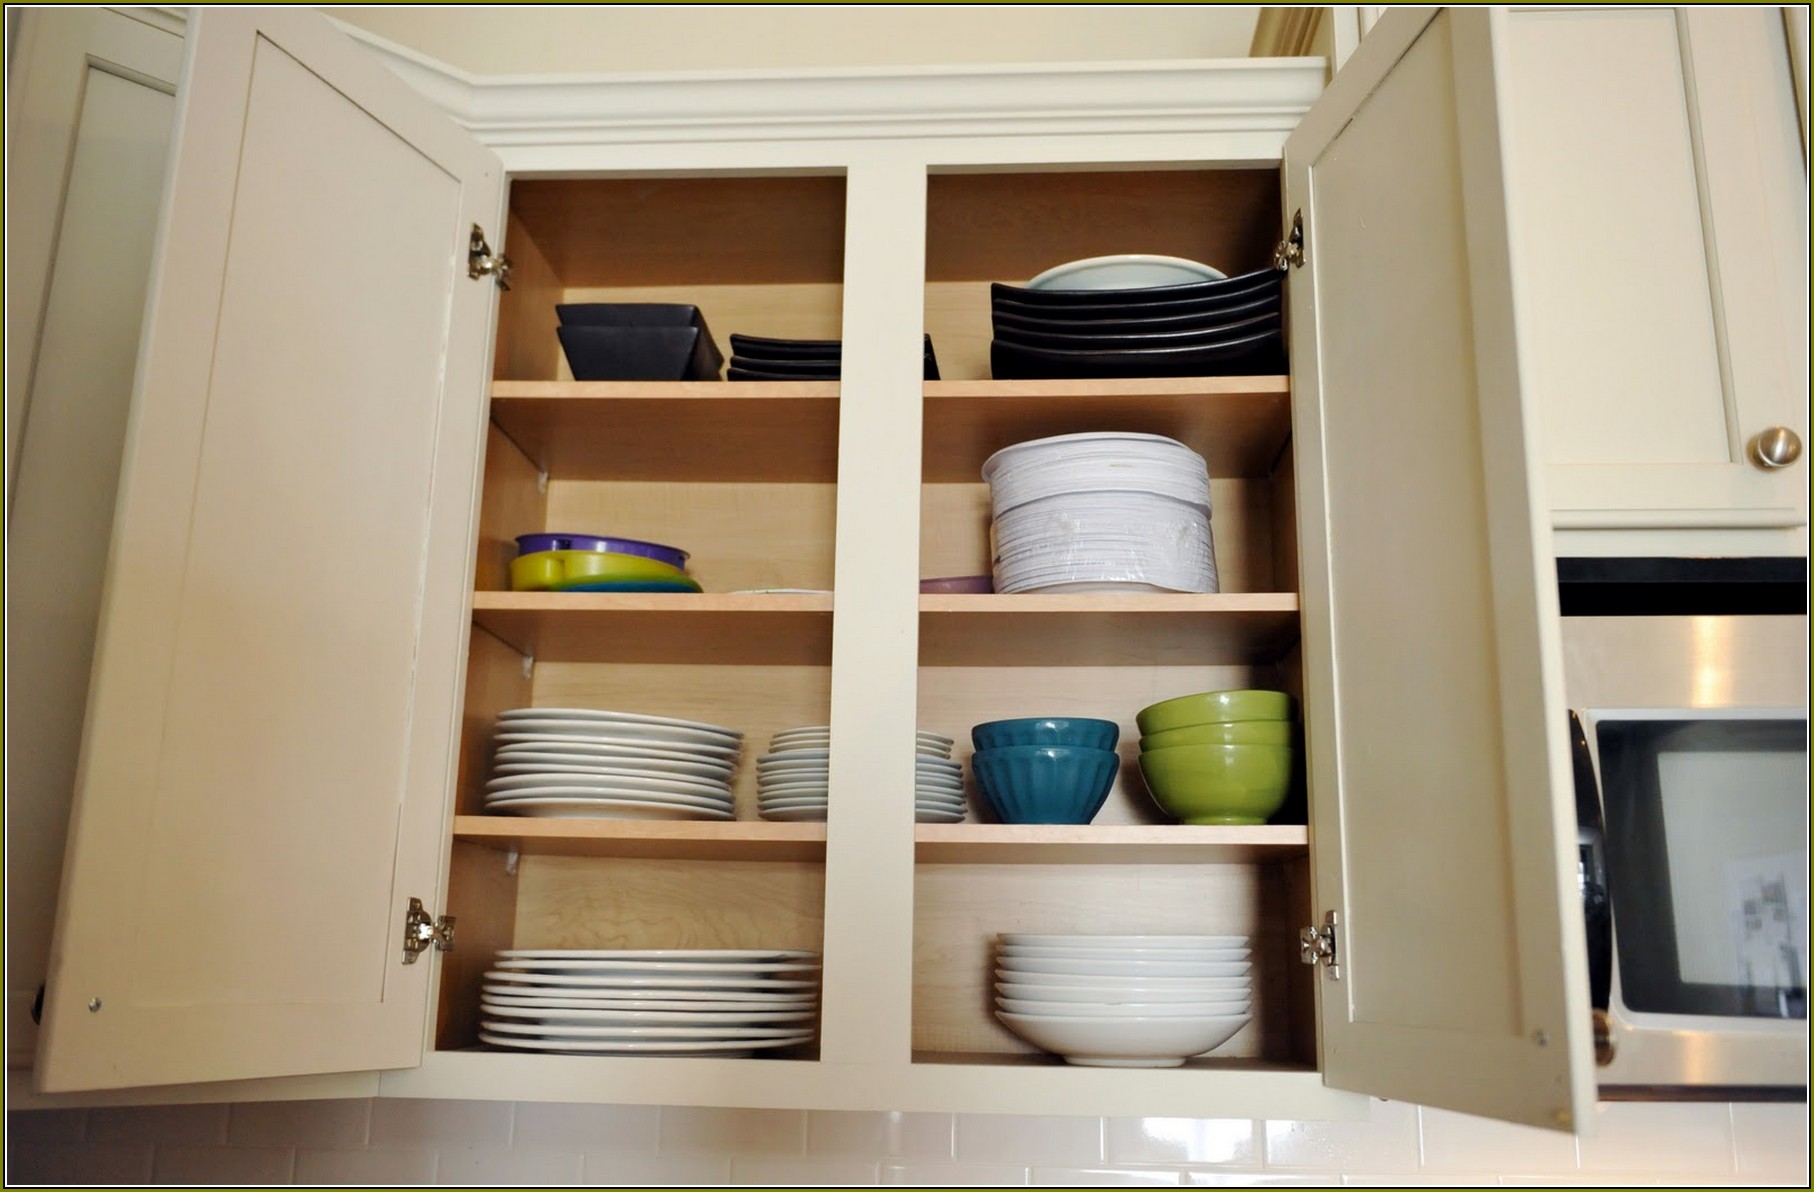 Organizing Kitchen Cabinets Small Kitchen